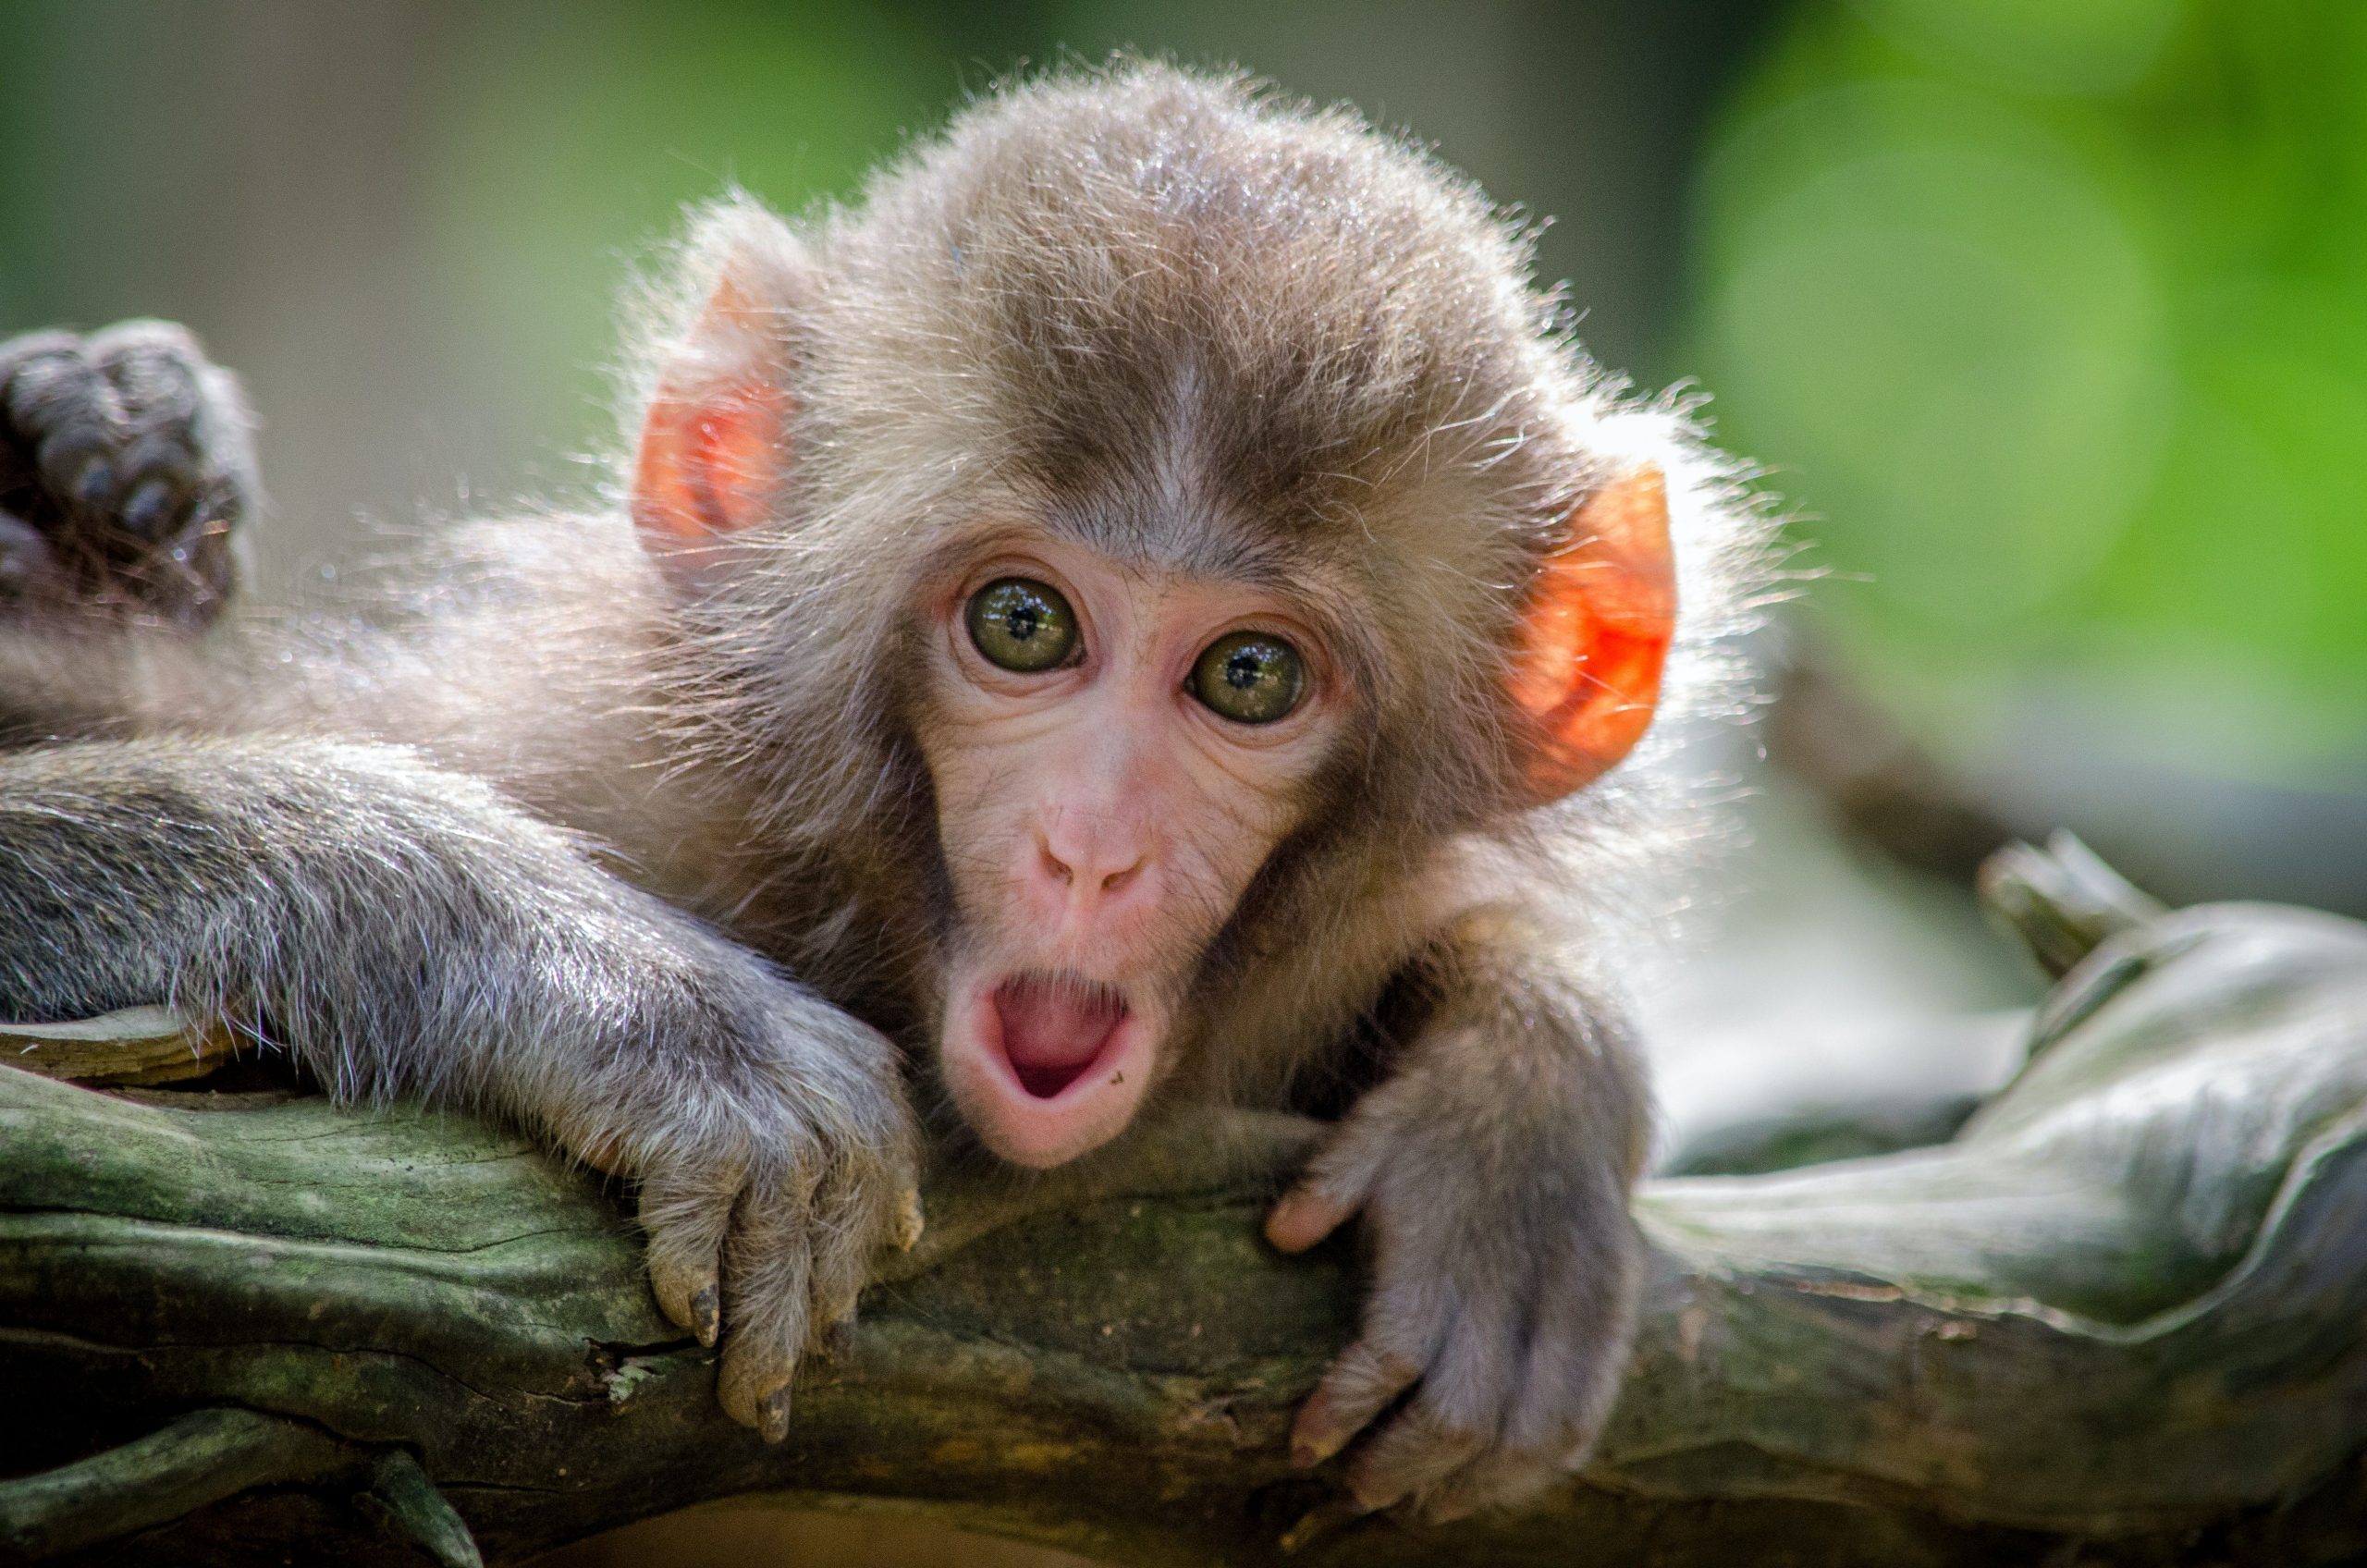 Monkeys go bananas, kill over 200 puppies in India